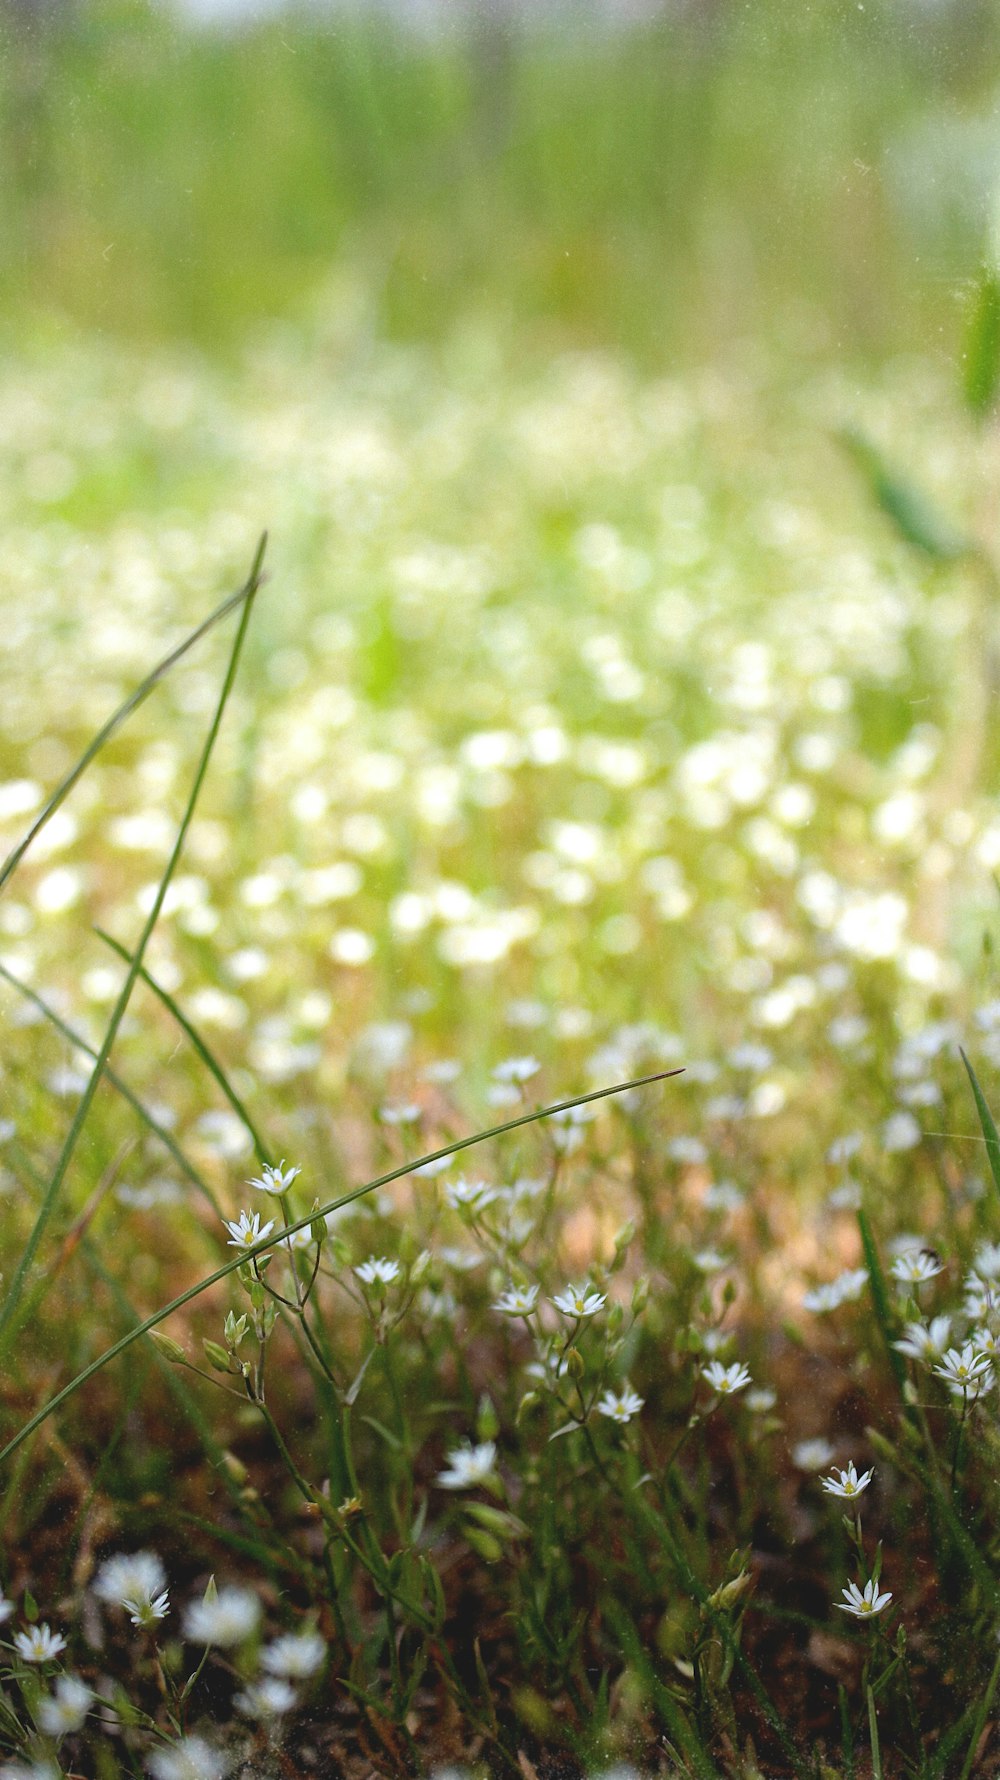 Hoa bồ công anh trắng là một trong những loài hoa tuyệt đẹp và được yêu thích nhất trên thế giới. Nếu bạn yêu hoa, hãy cùng xem bức ảnh này để chiêm ngưỡng vẻ đẹp tinh khôi và thanh thoát của loài hoa đẹp nhất mà mùa Xuân đem lại. Ảnh chụp cận cảnh này như mở ra một thế giới khác, đậm chất nghệ thuật và chứa đựng nhiều cảm xúc khác nhau.